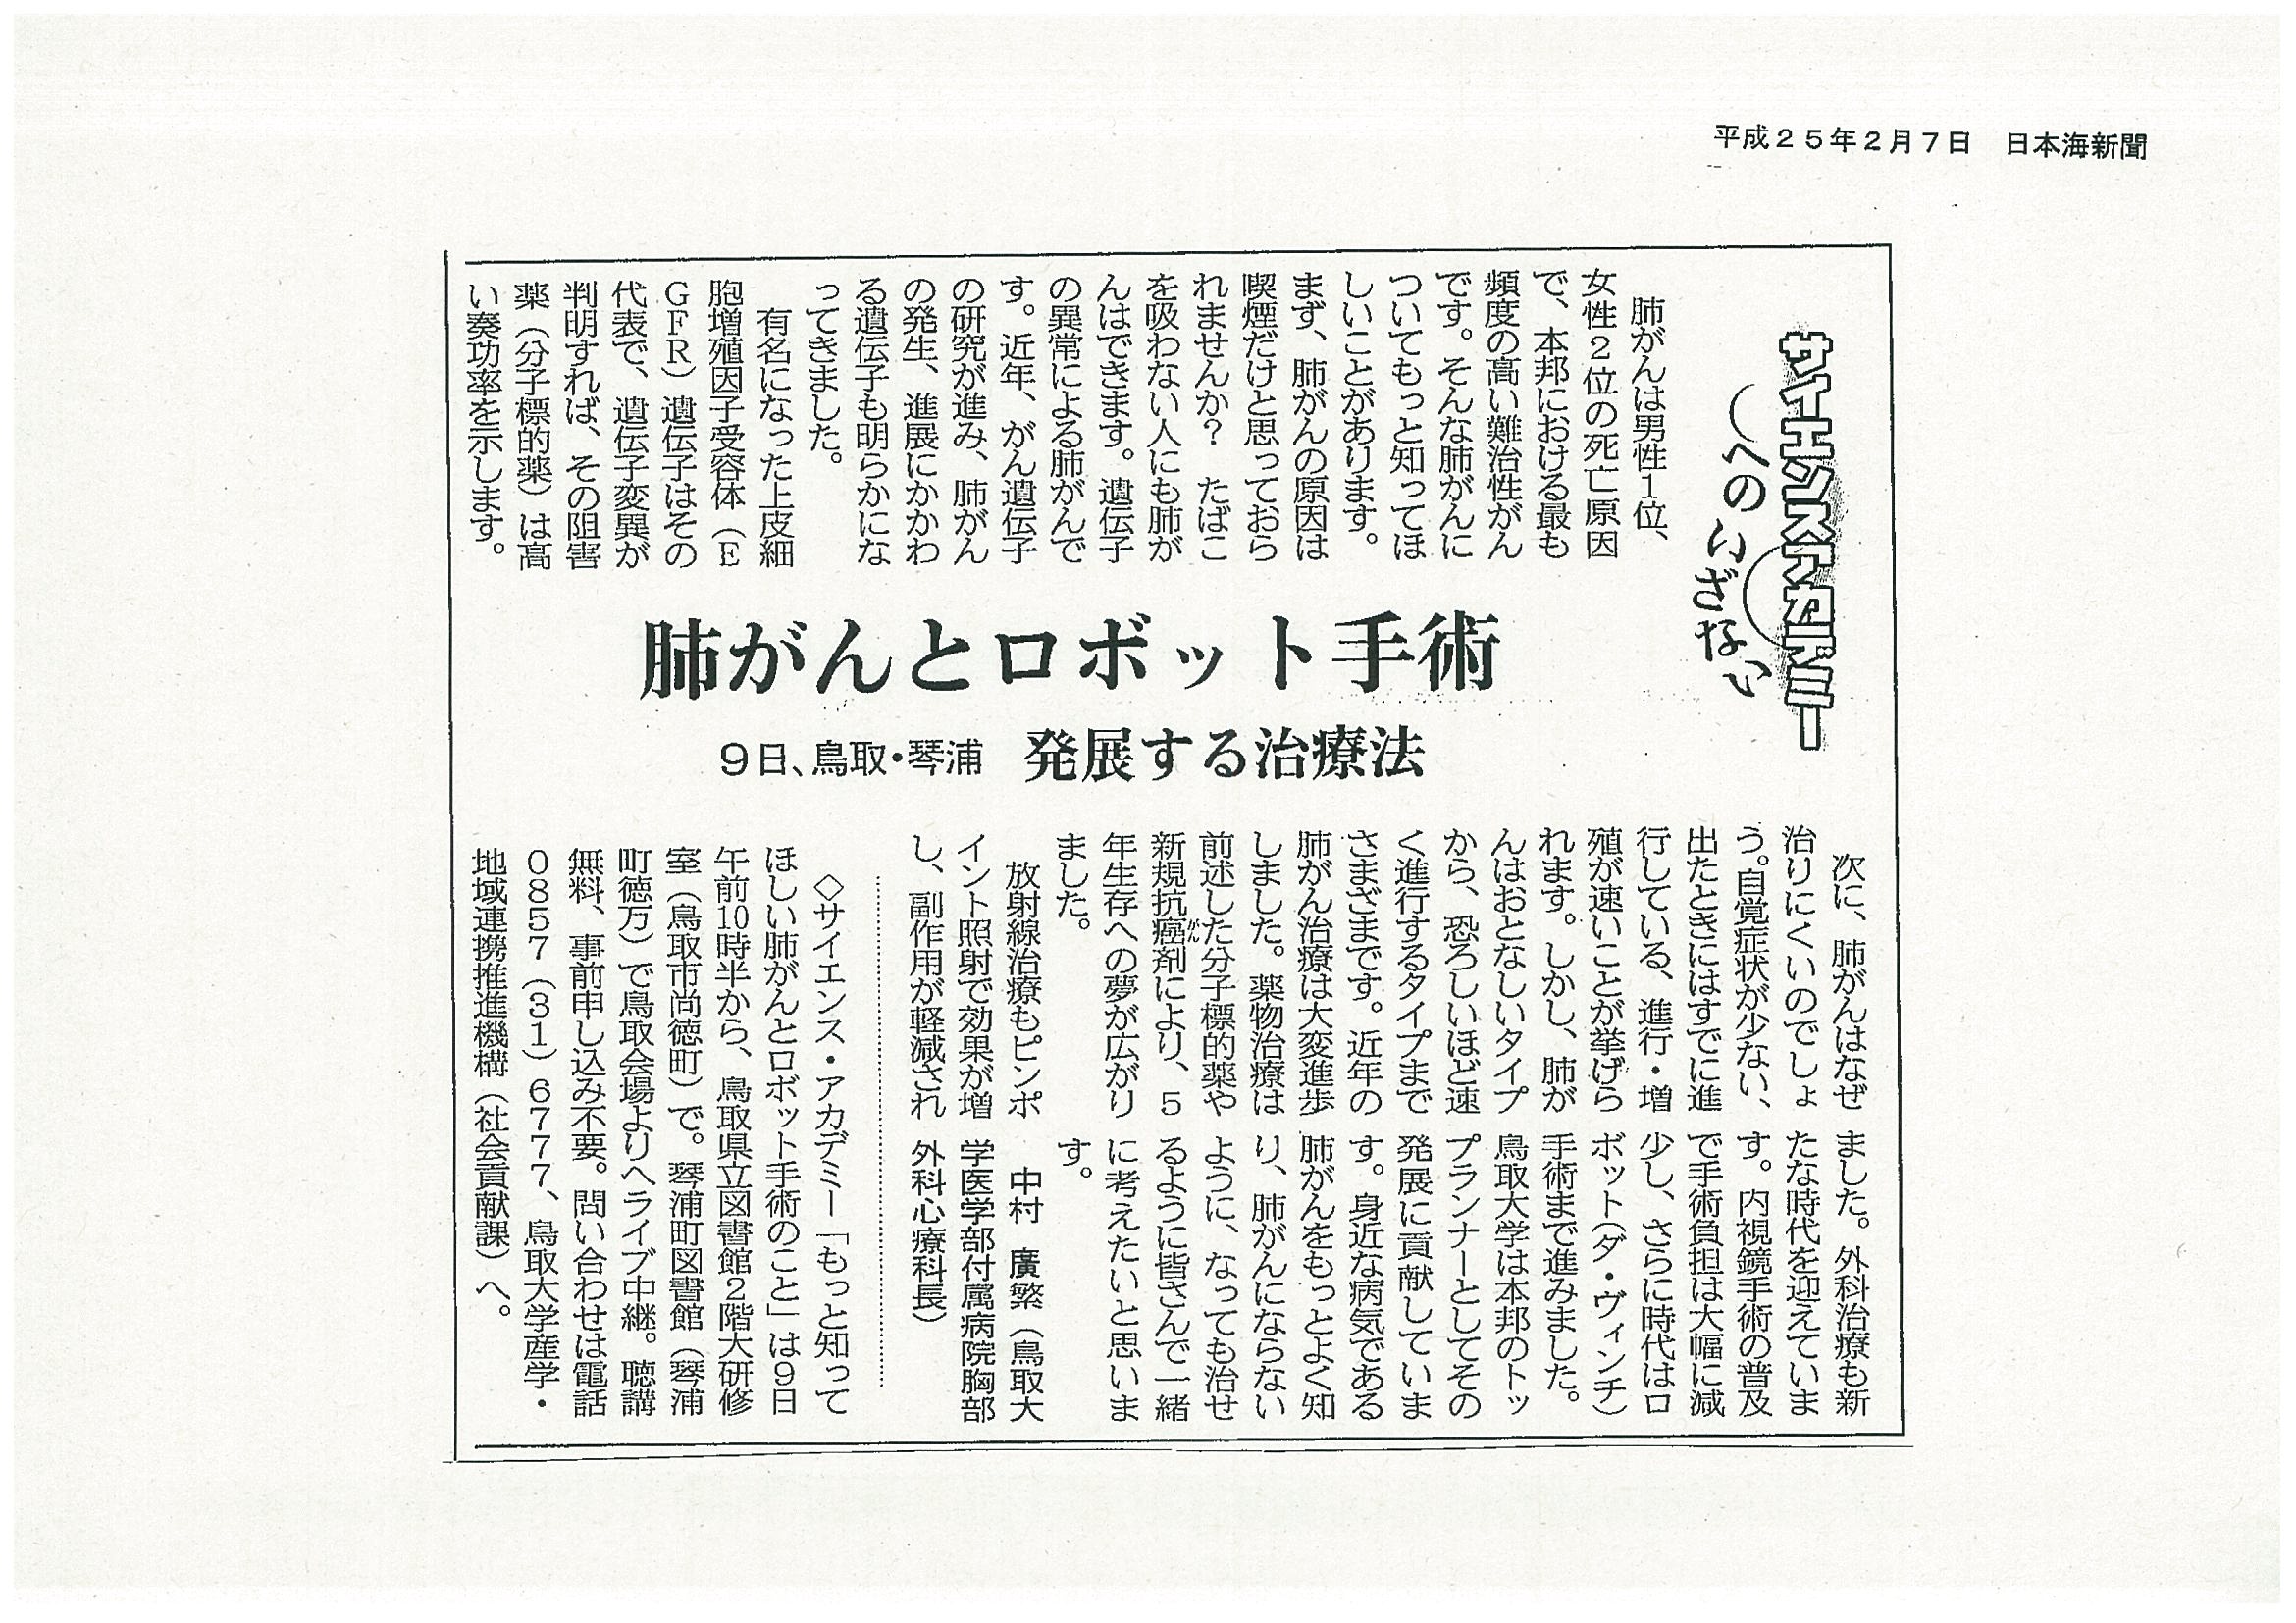 2013年2月7日(日本海新聞)